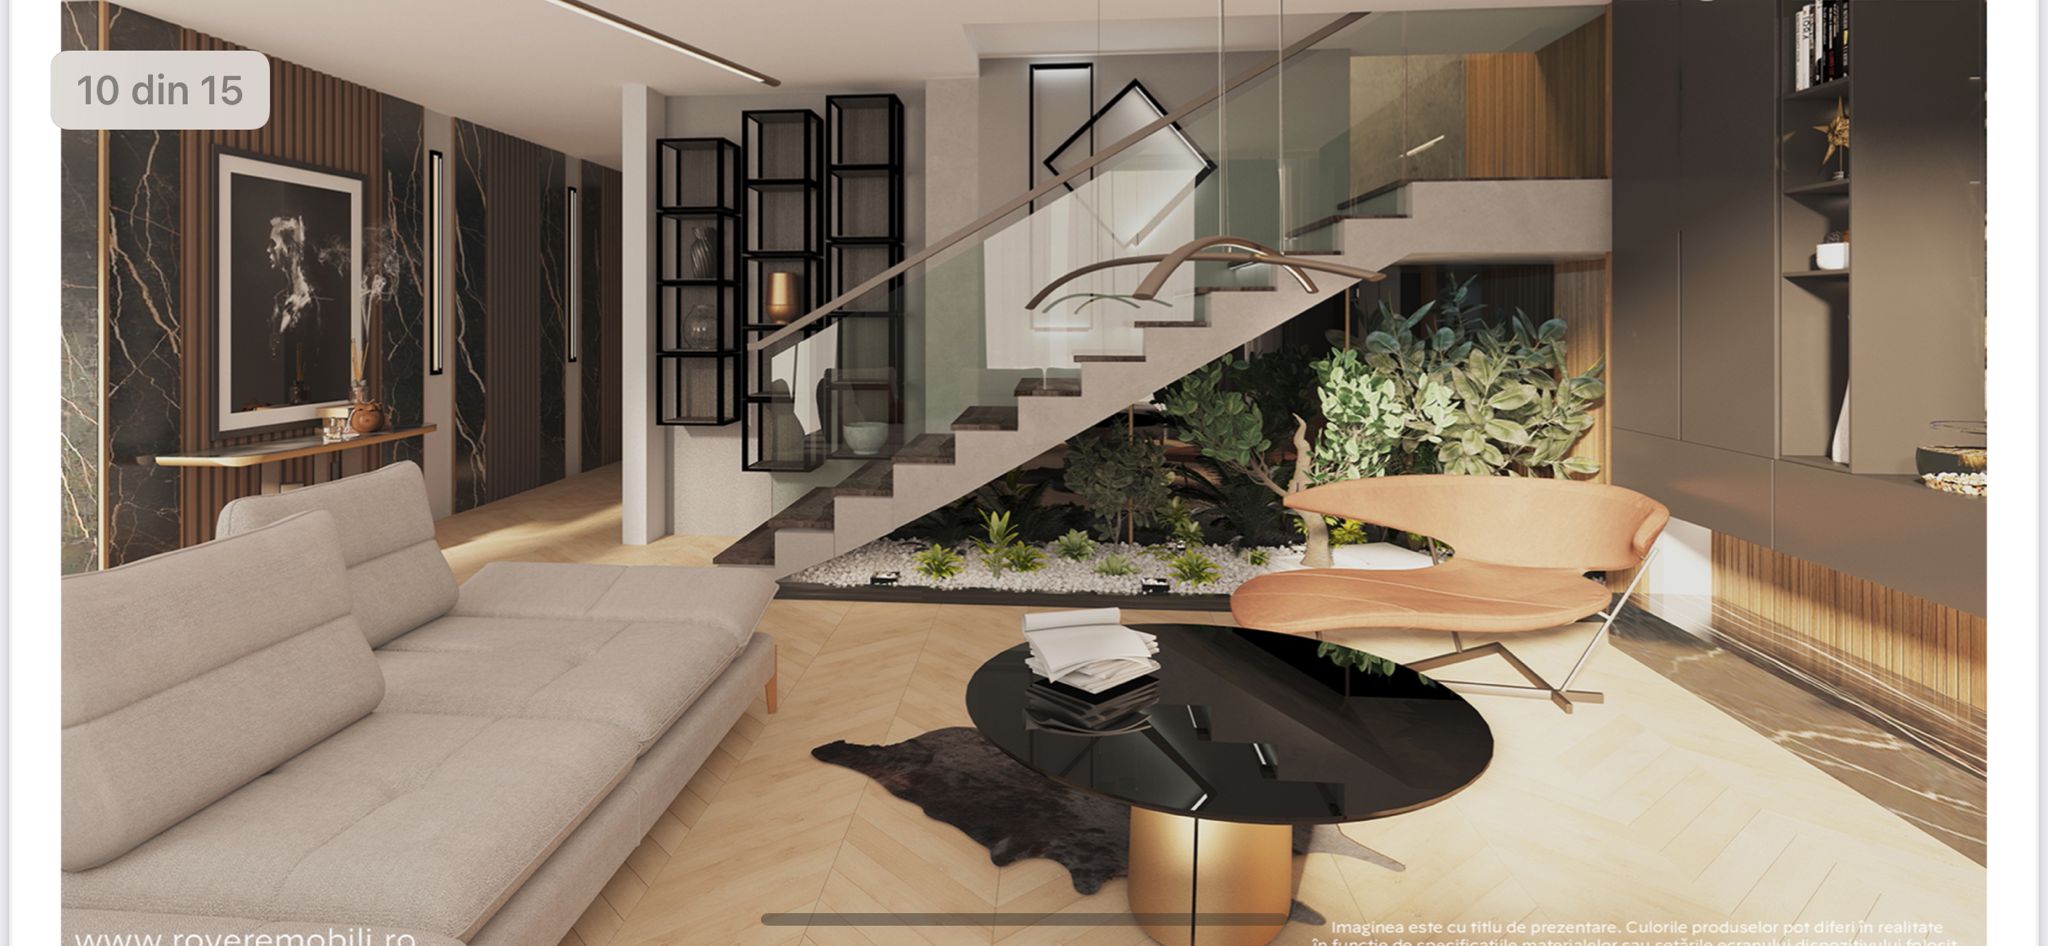 Residence5villas_Click4home_design interior Rovere (3)